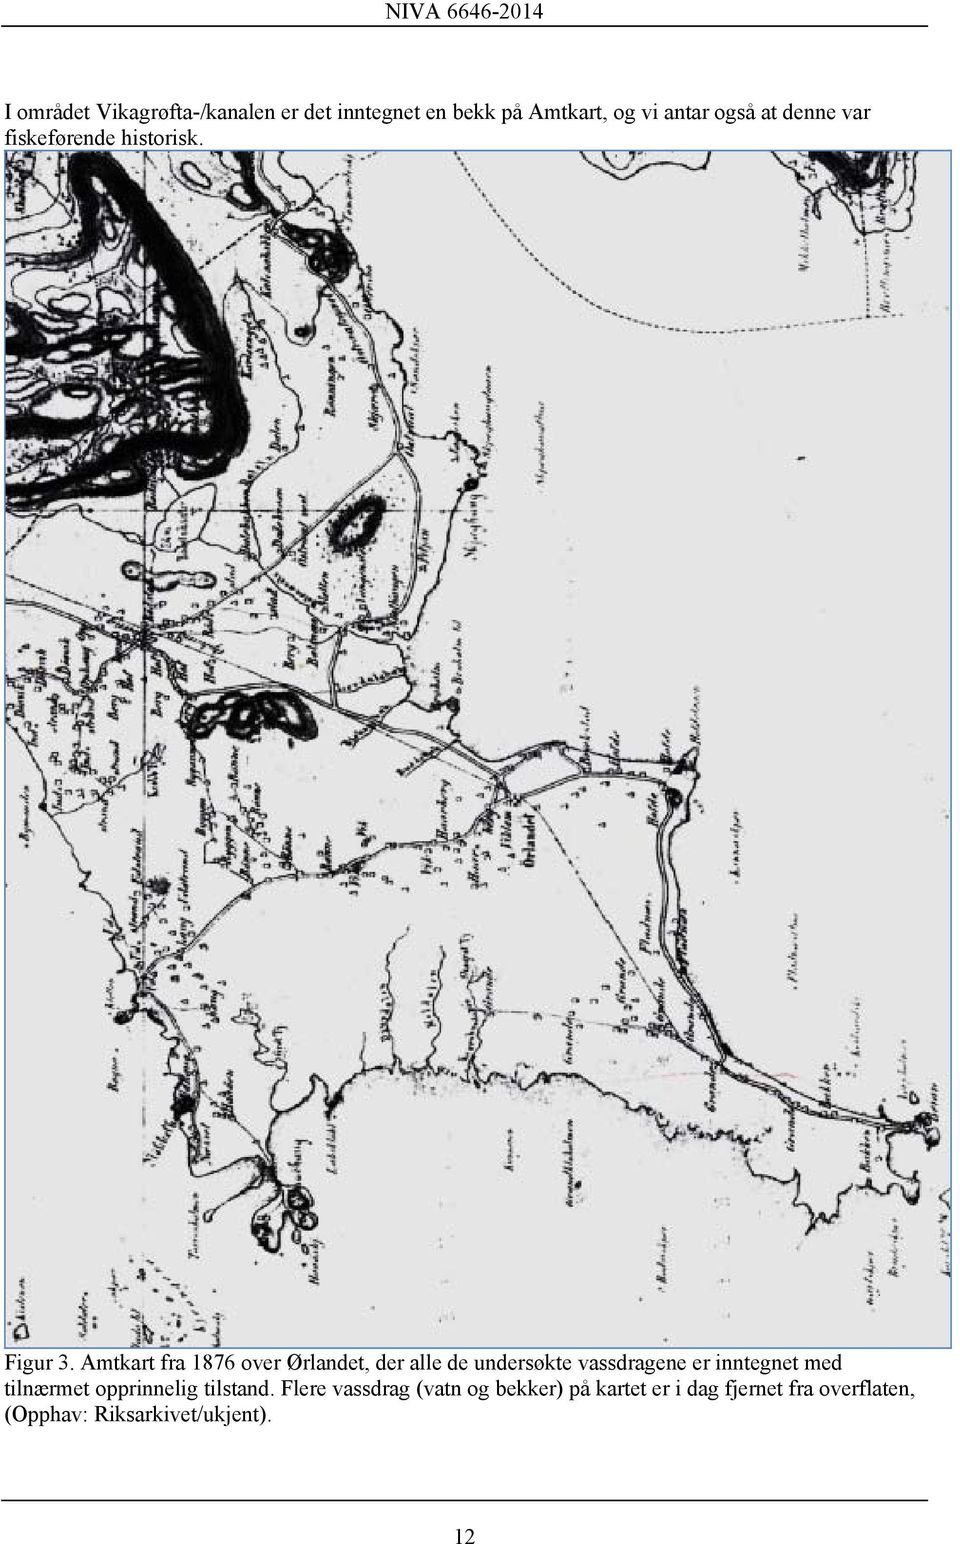 Amtkart fra 1876 over Ørlandet, der alle de undersøkte vassdragene er inntegnet med